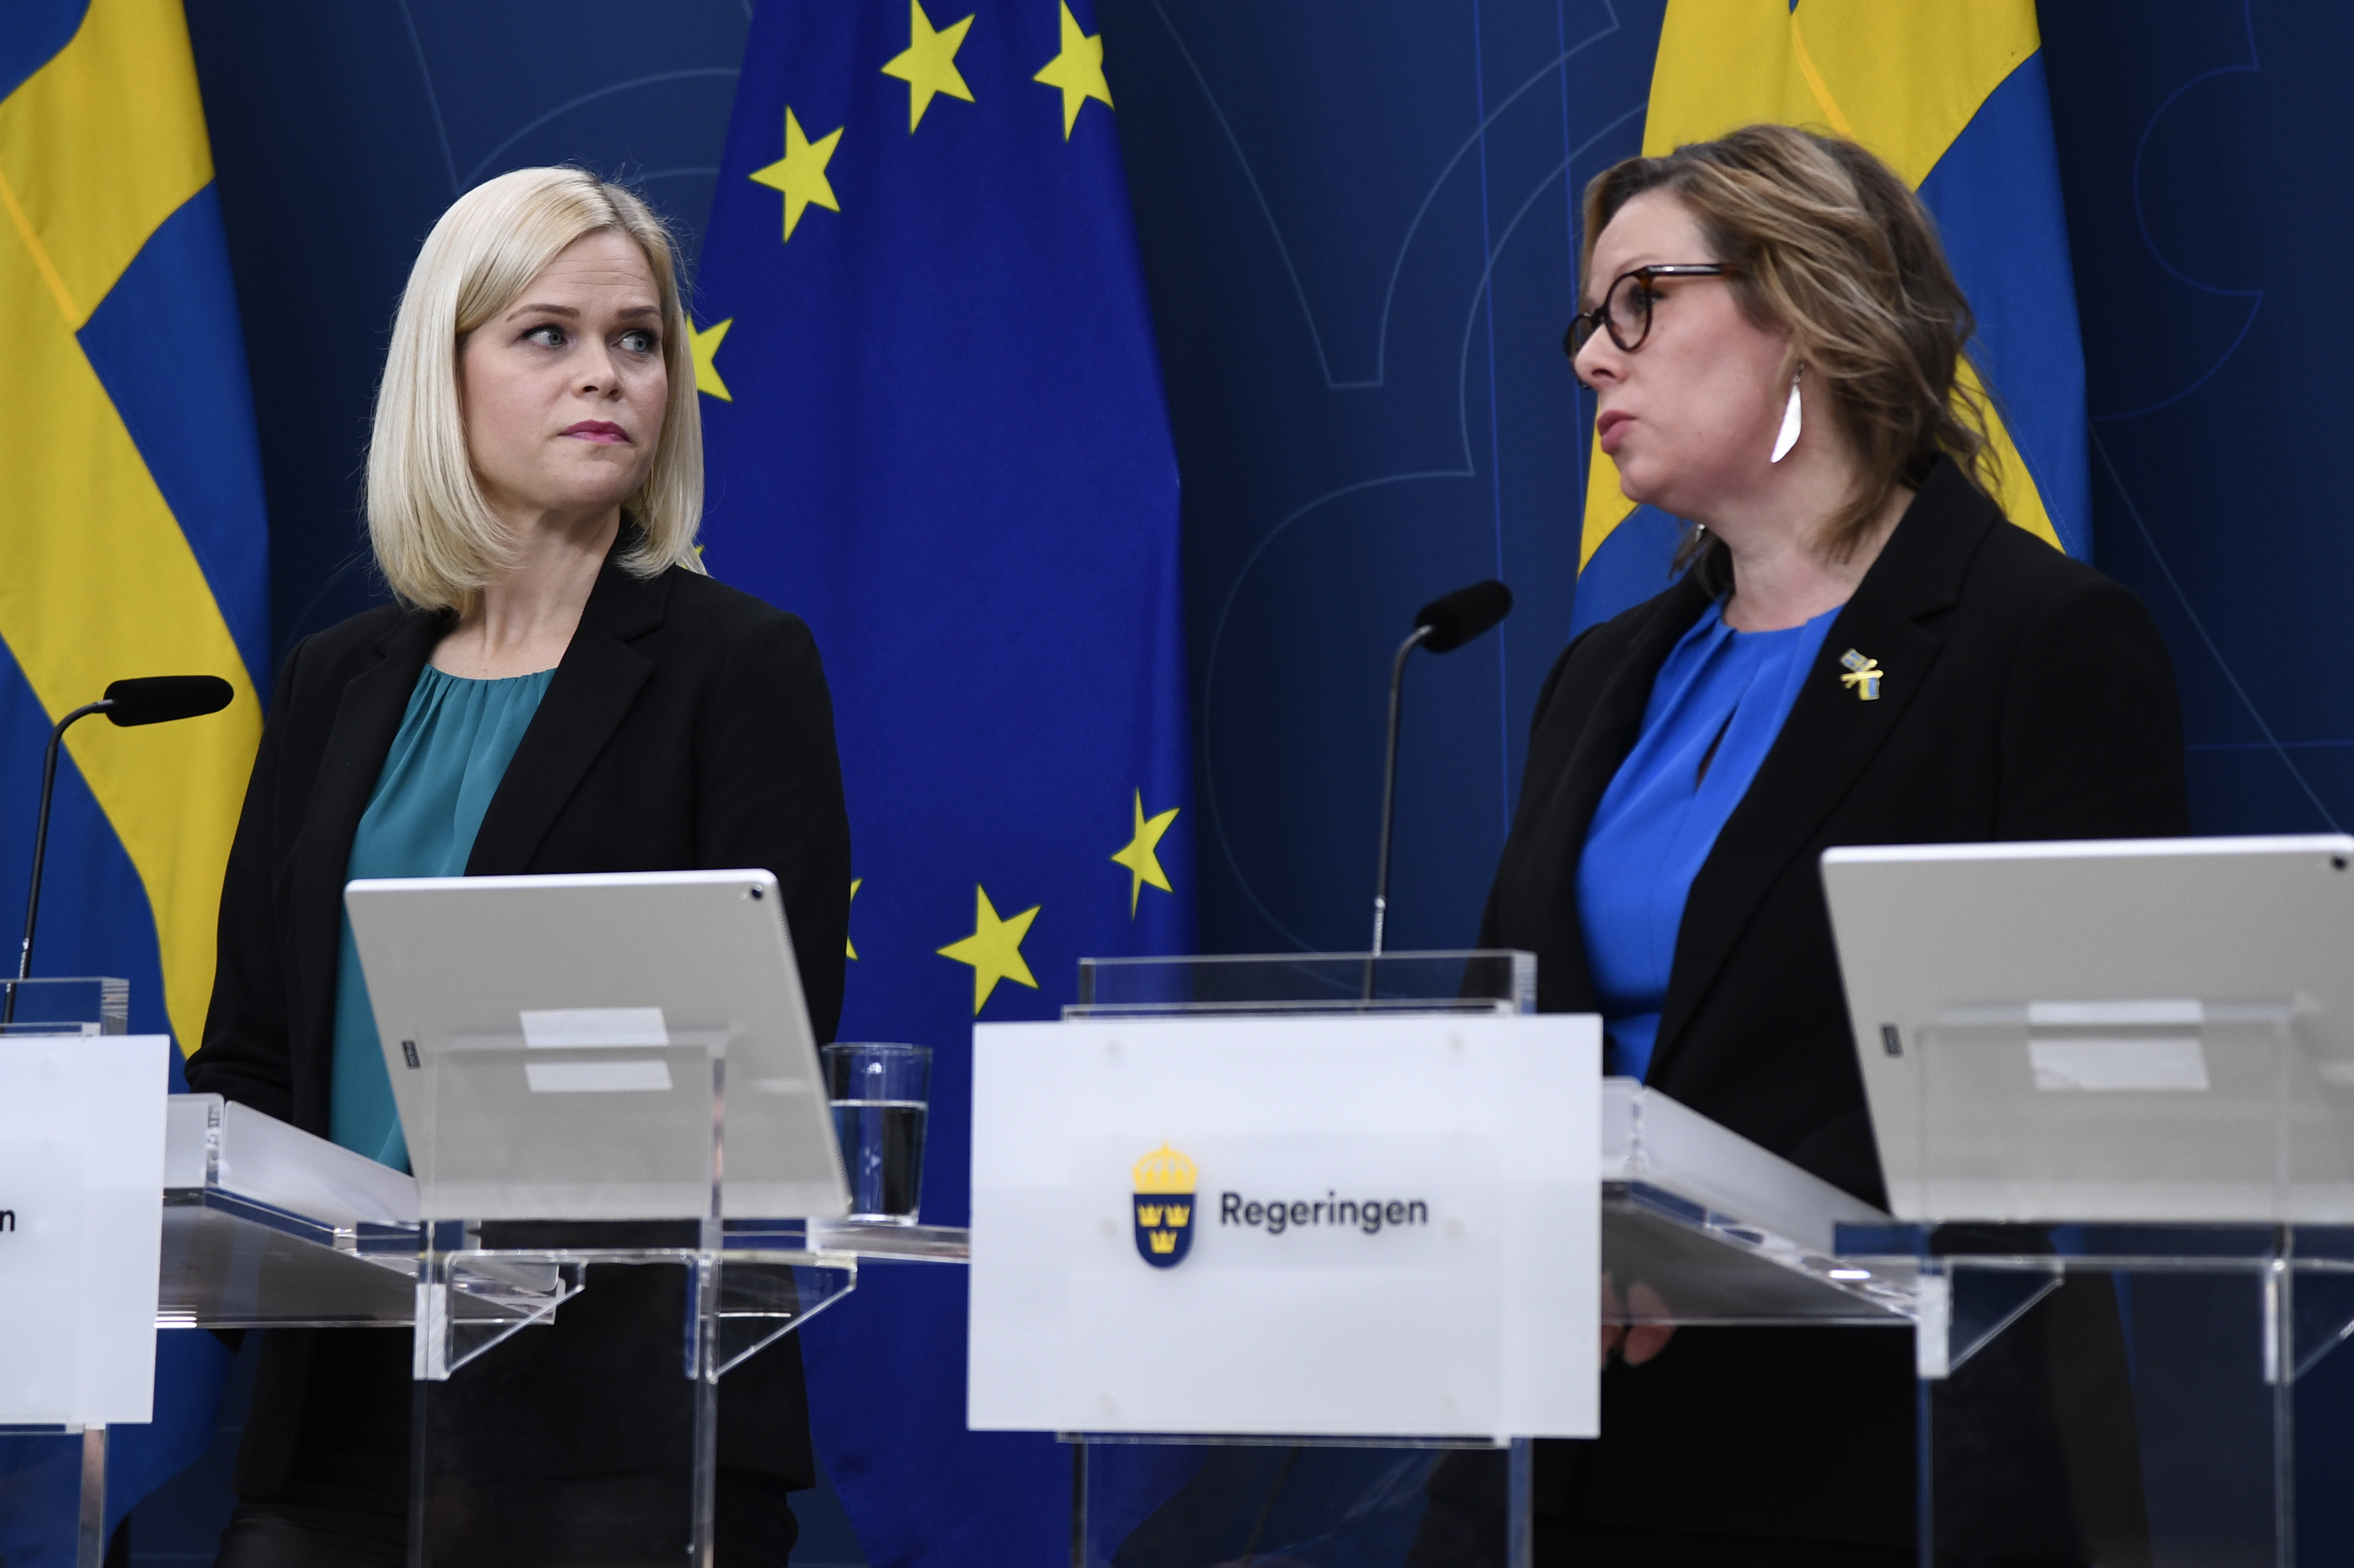 Jämställdhets- och biträdande arbetsmarknadsminister Paulina Brandberg (L) och migrationsminister Maria Malmer Stenergard (M) presenterar nya förslag på migrationsområdet.